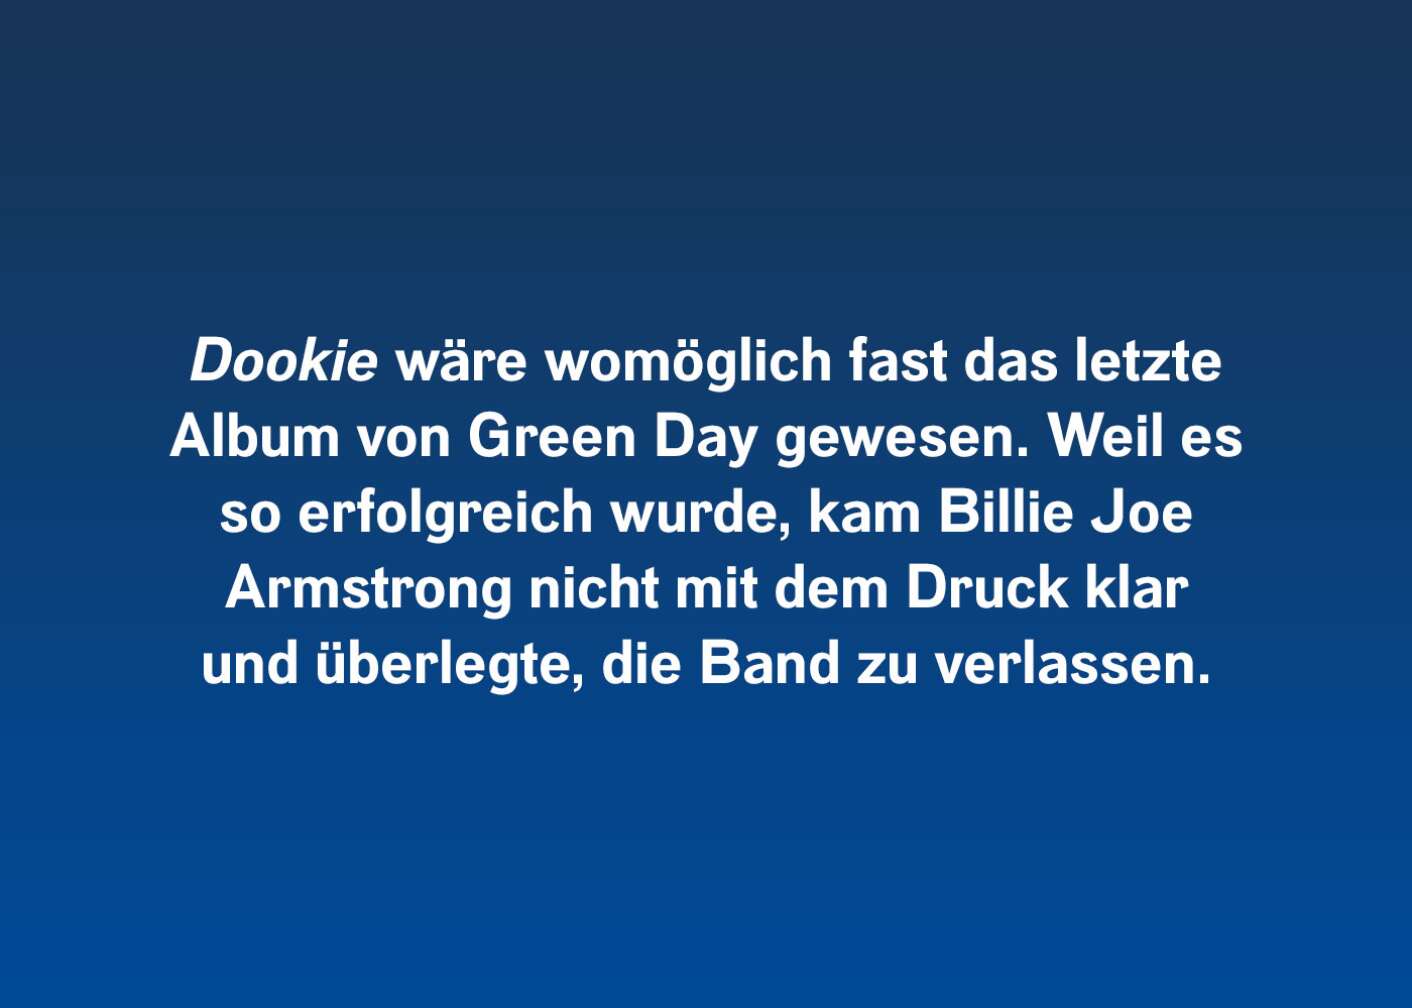 "Dookie" wäre fast das letzte Album von Green Day gewesen. Weil es so erfolgreich wurde, kam Billie Joe Arms